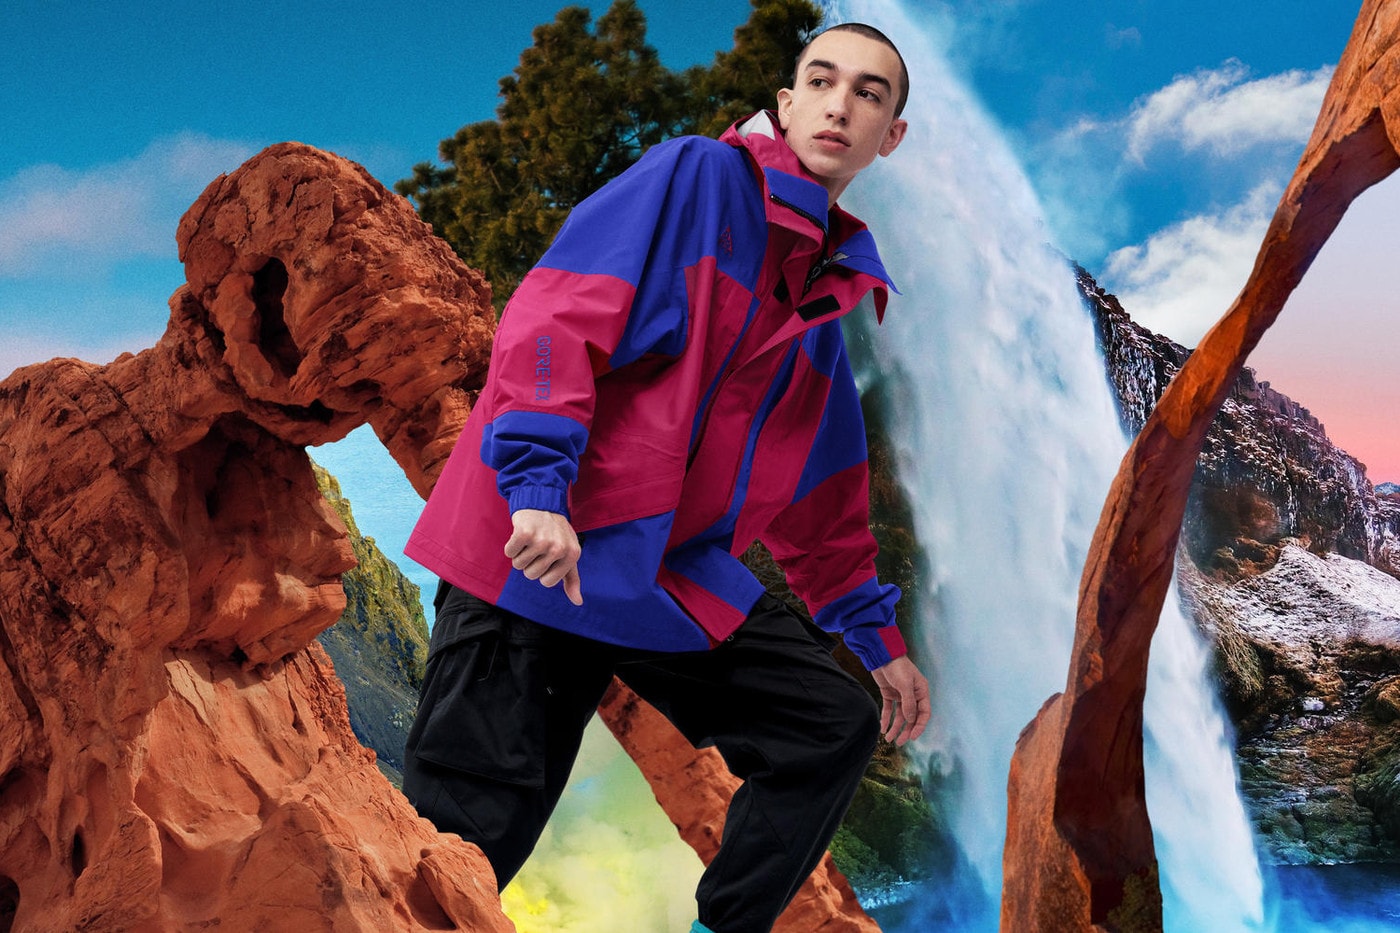 1990년대 색채를 부활시킨 나이키 ACG 2019 봄 컬렉션 스니커 의류 고어텍스 재킷